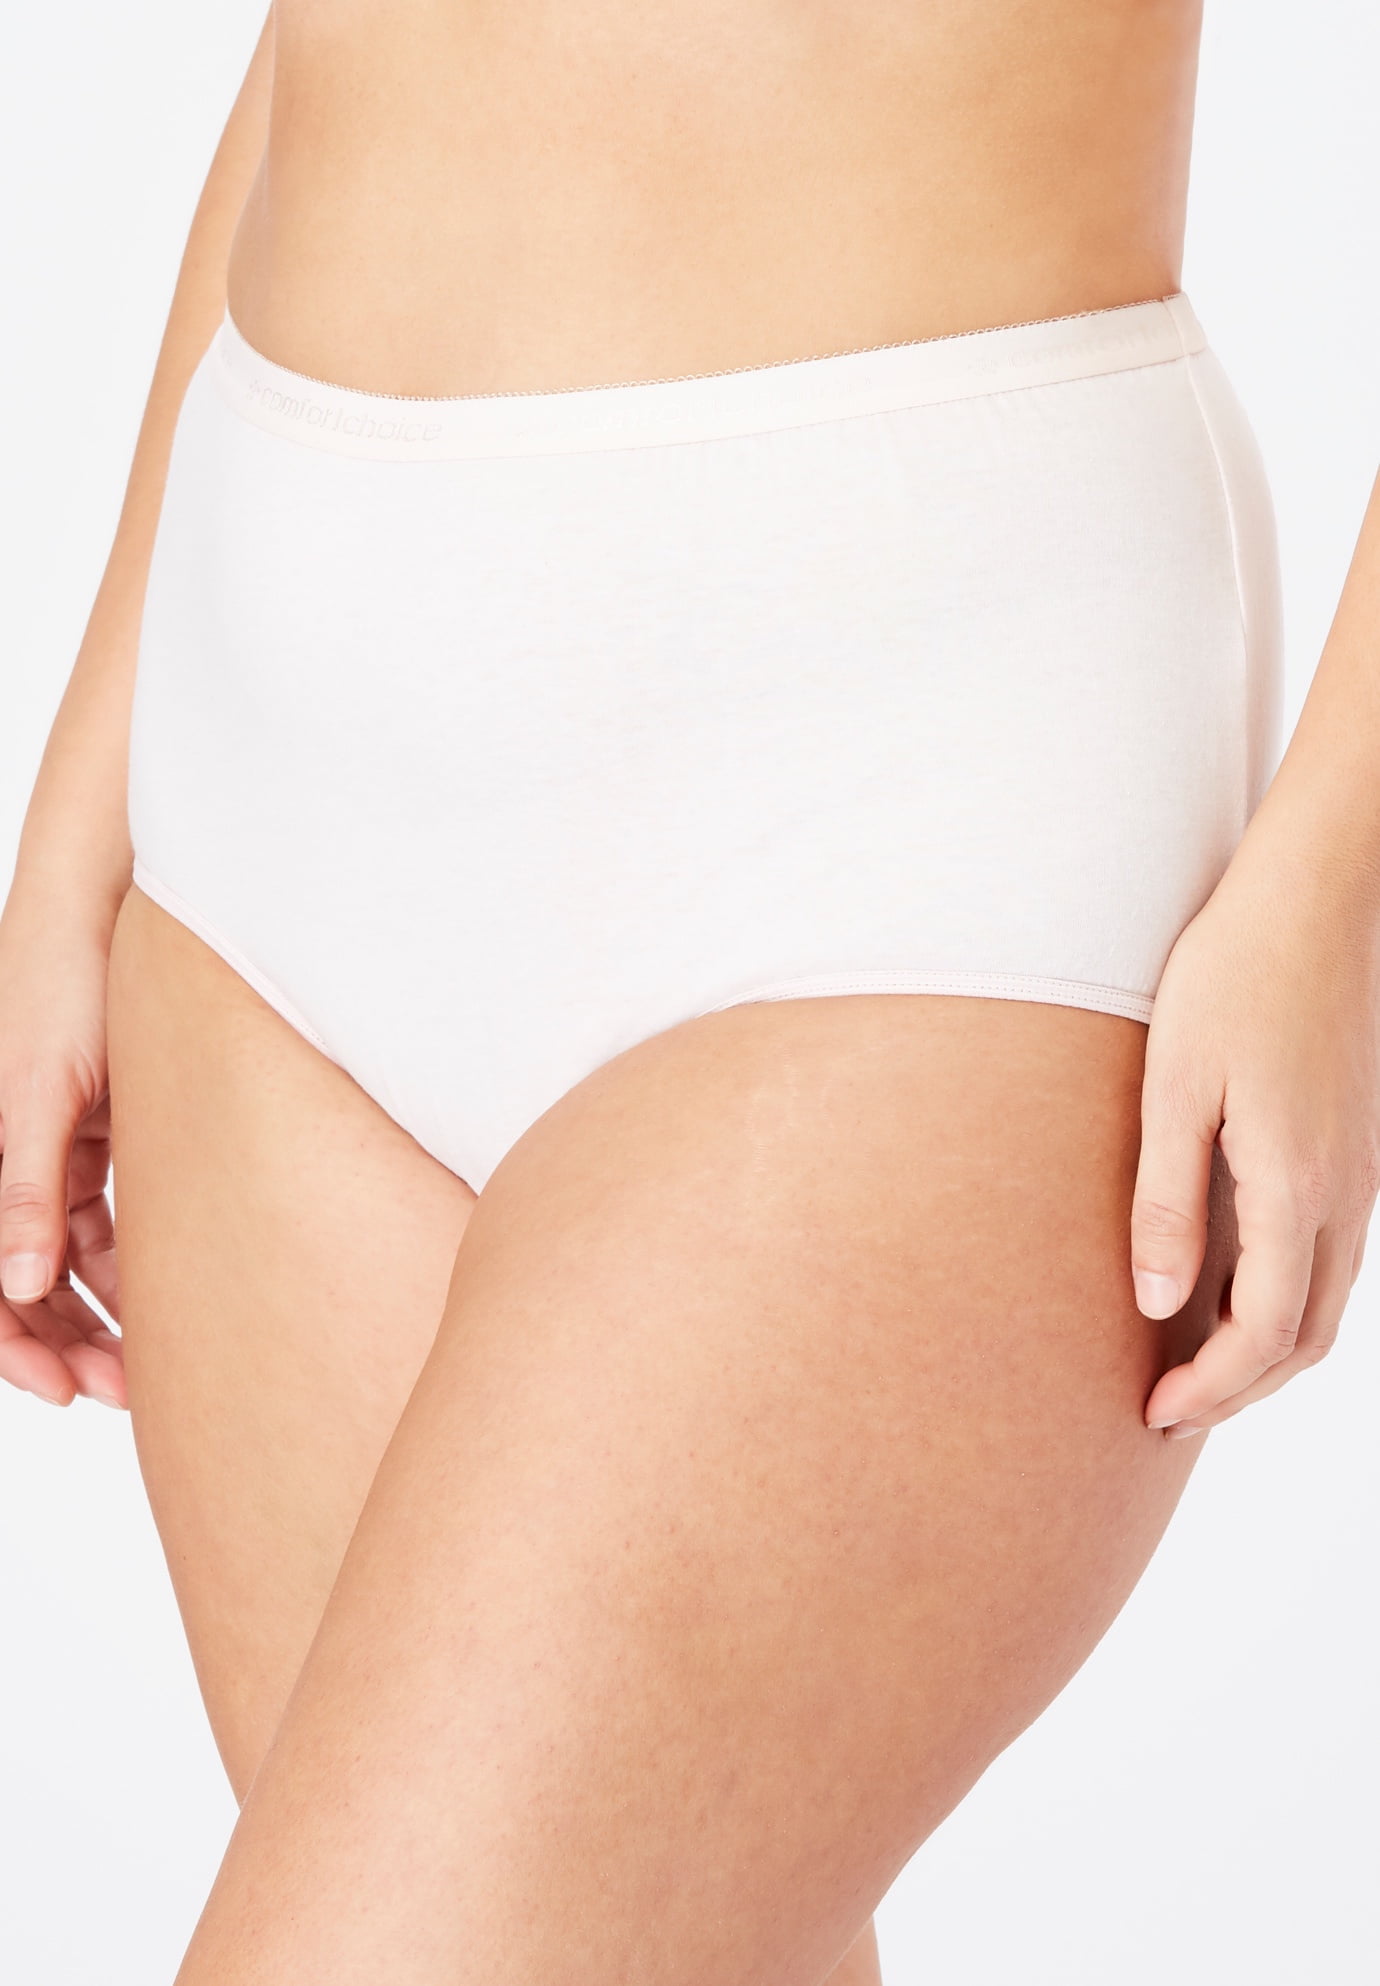 Women Panties Cotton Underwear Plus Size Brief 3XL (10066)